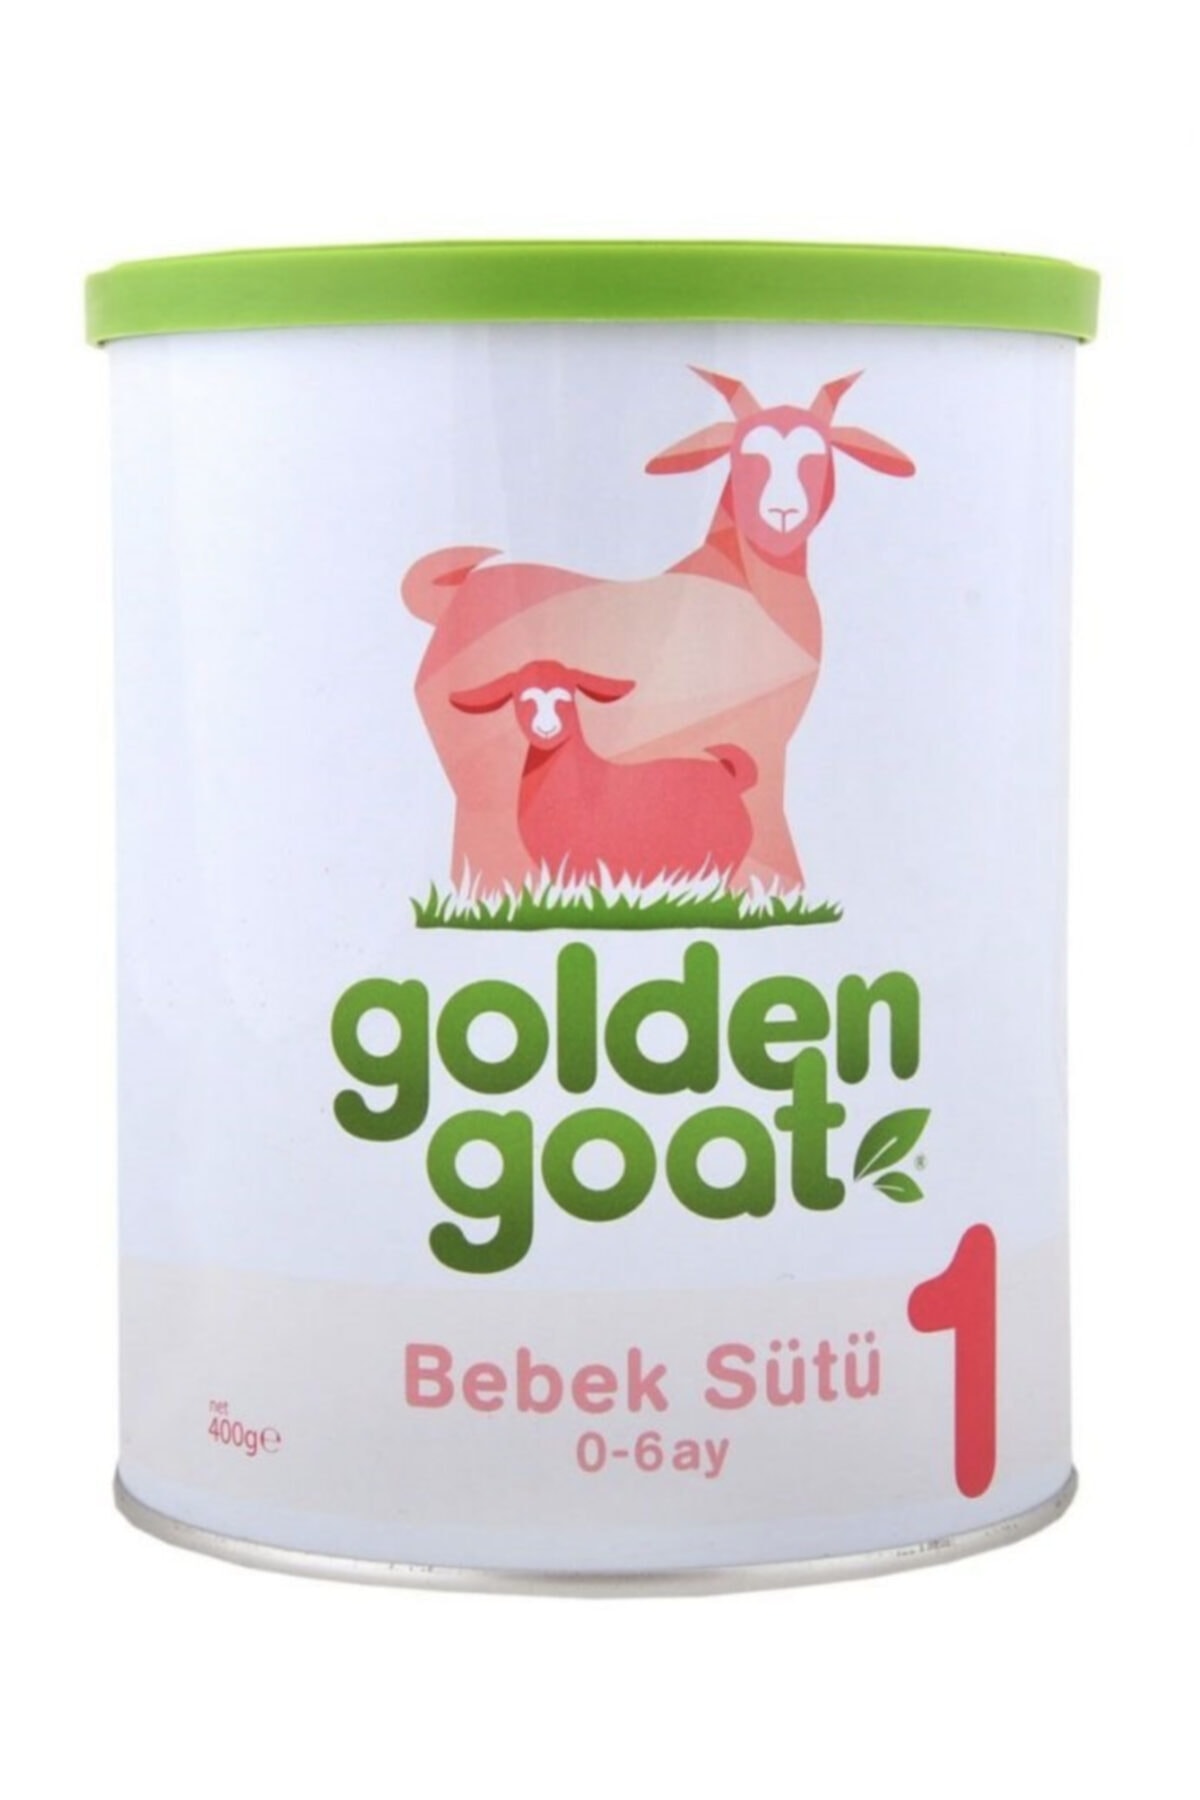 Golden Goat Keçi Bebek Sütü 1 Numara 400 gr